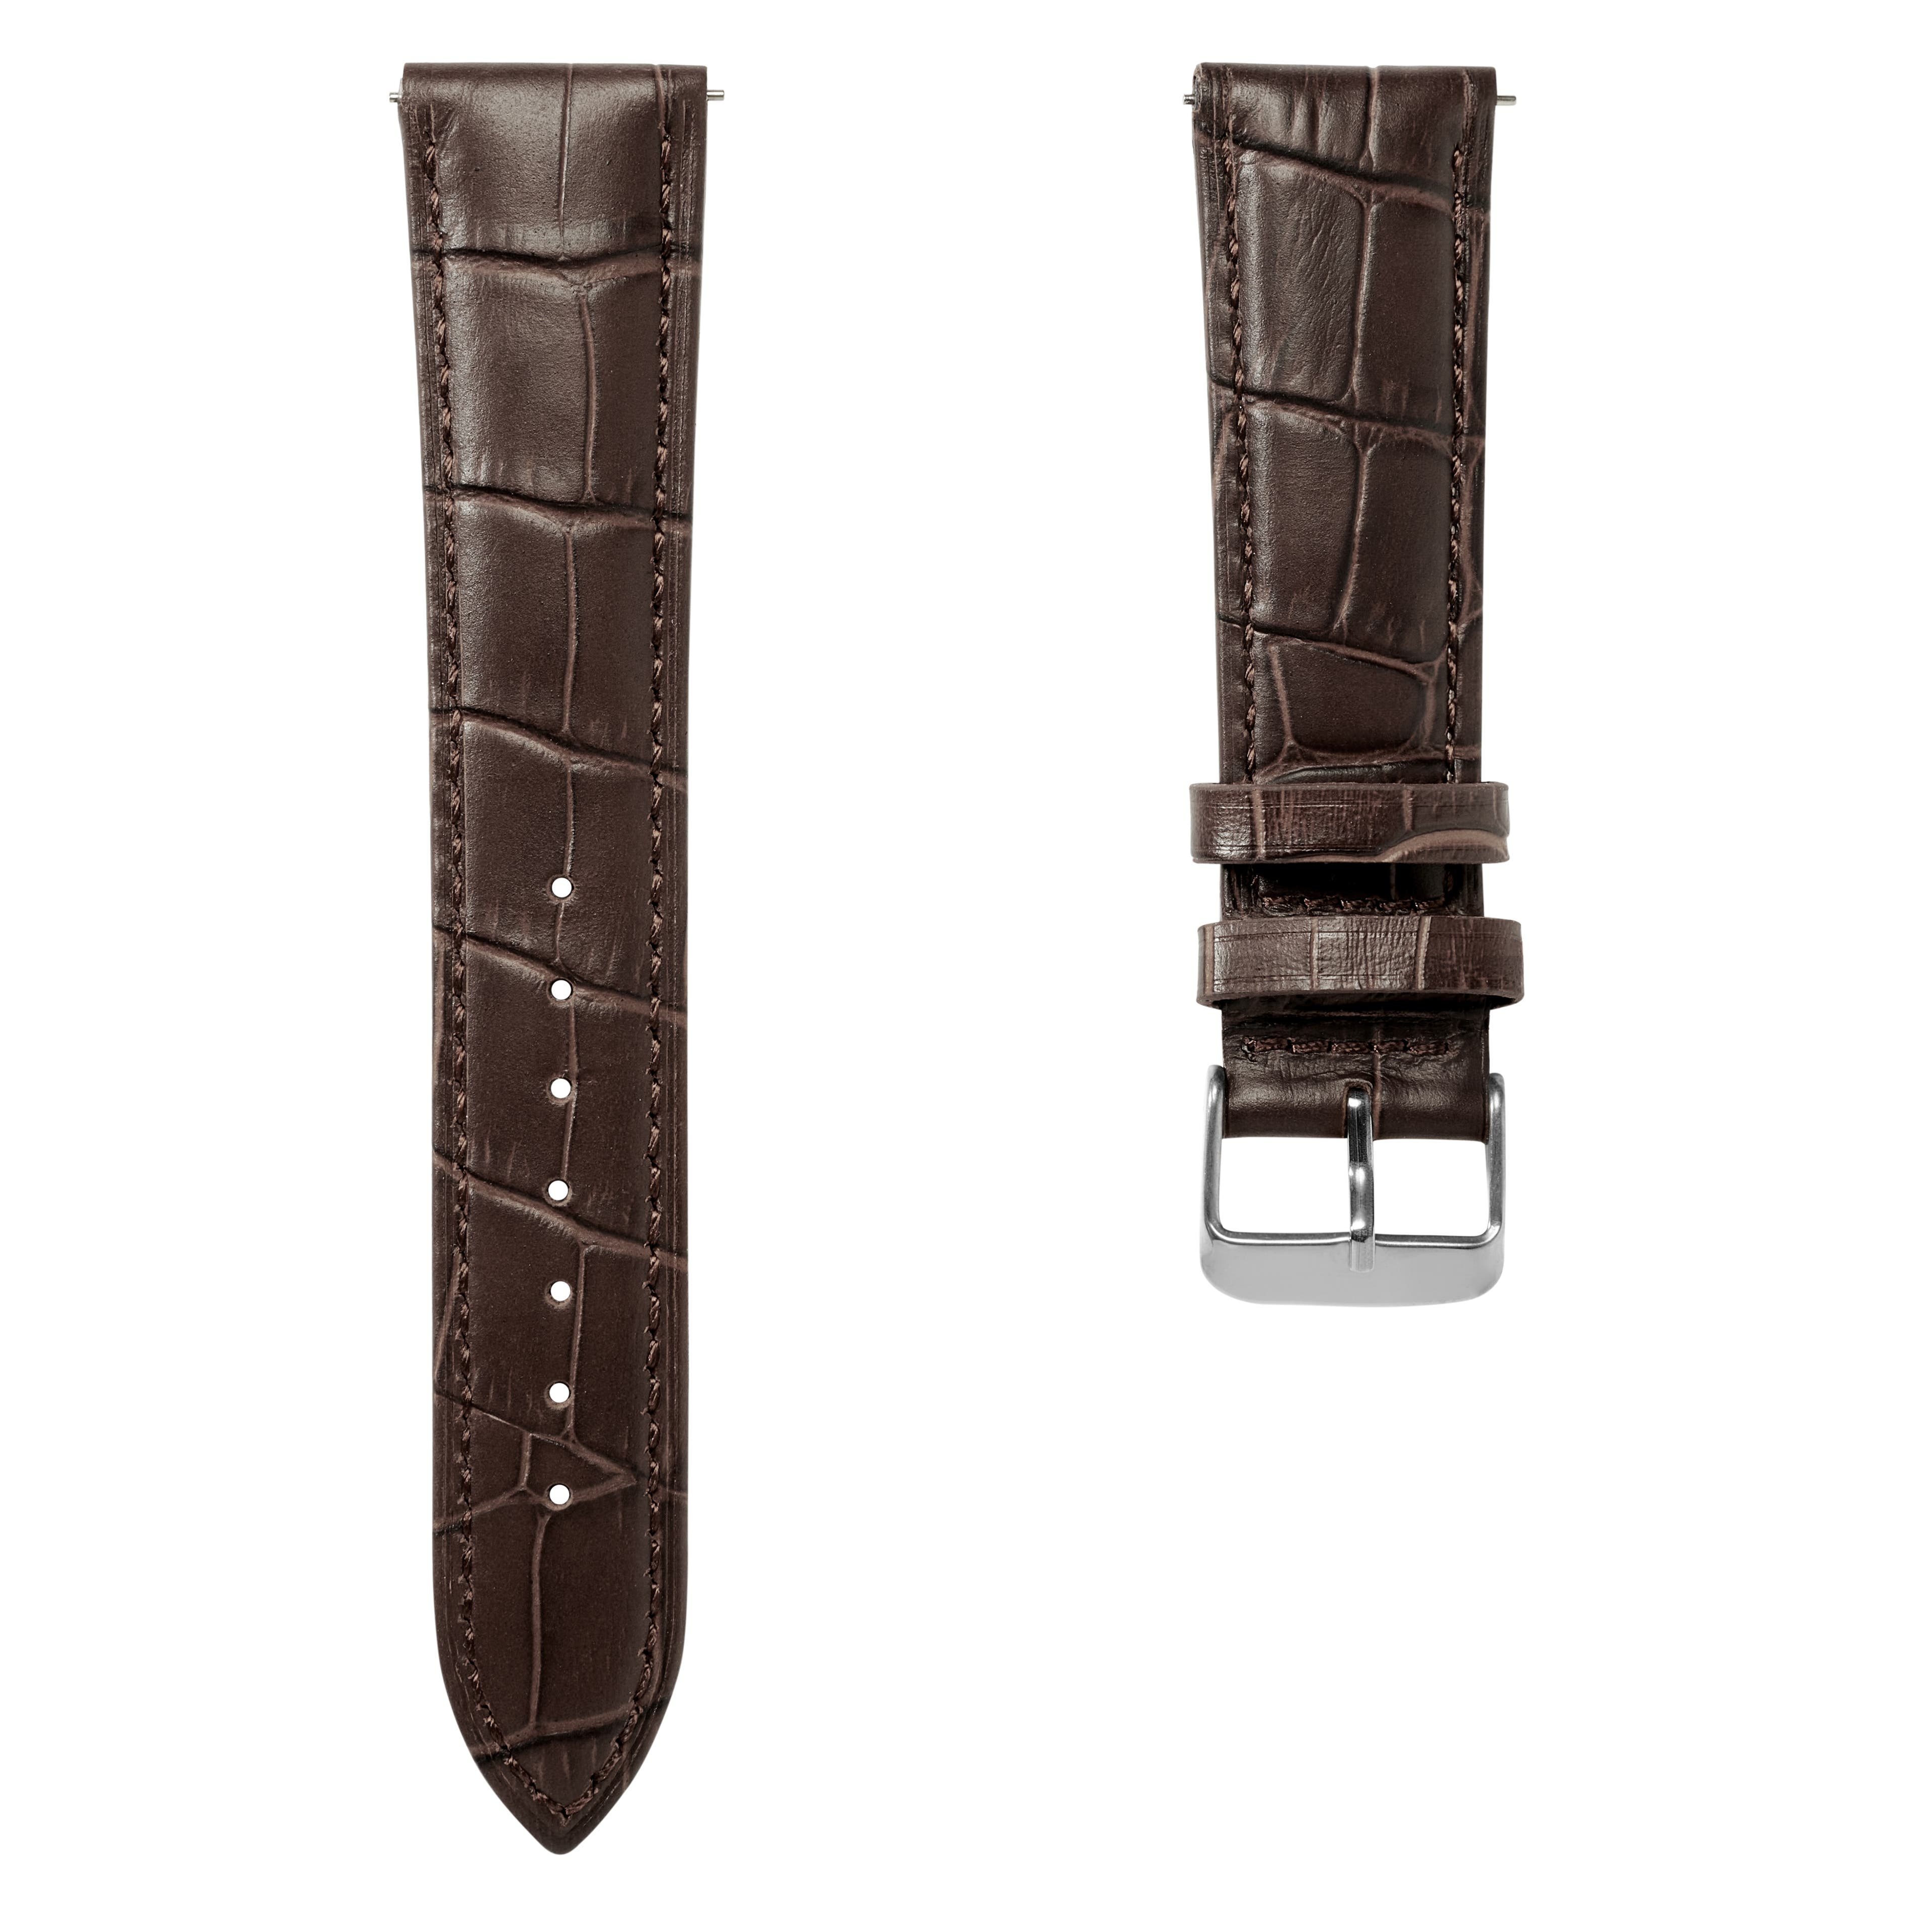 Correa de reloj de cuero marrón oscuro con relieve de cocodrilo de 18 mm y hebilla plateada - De liberación rápida